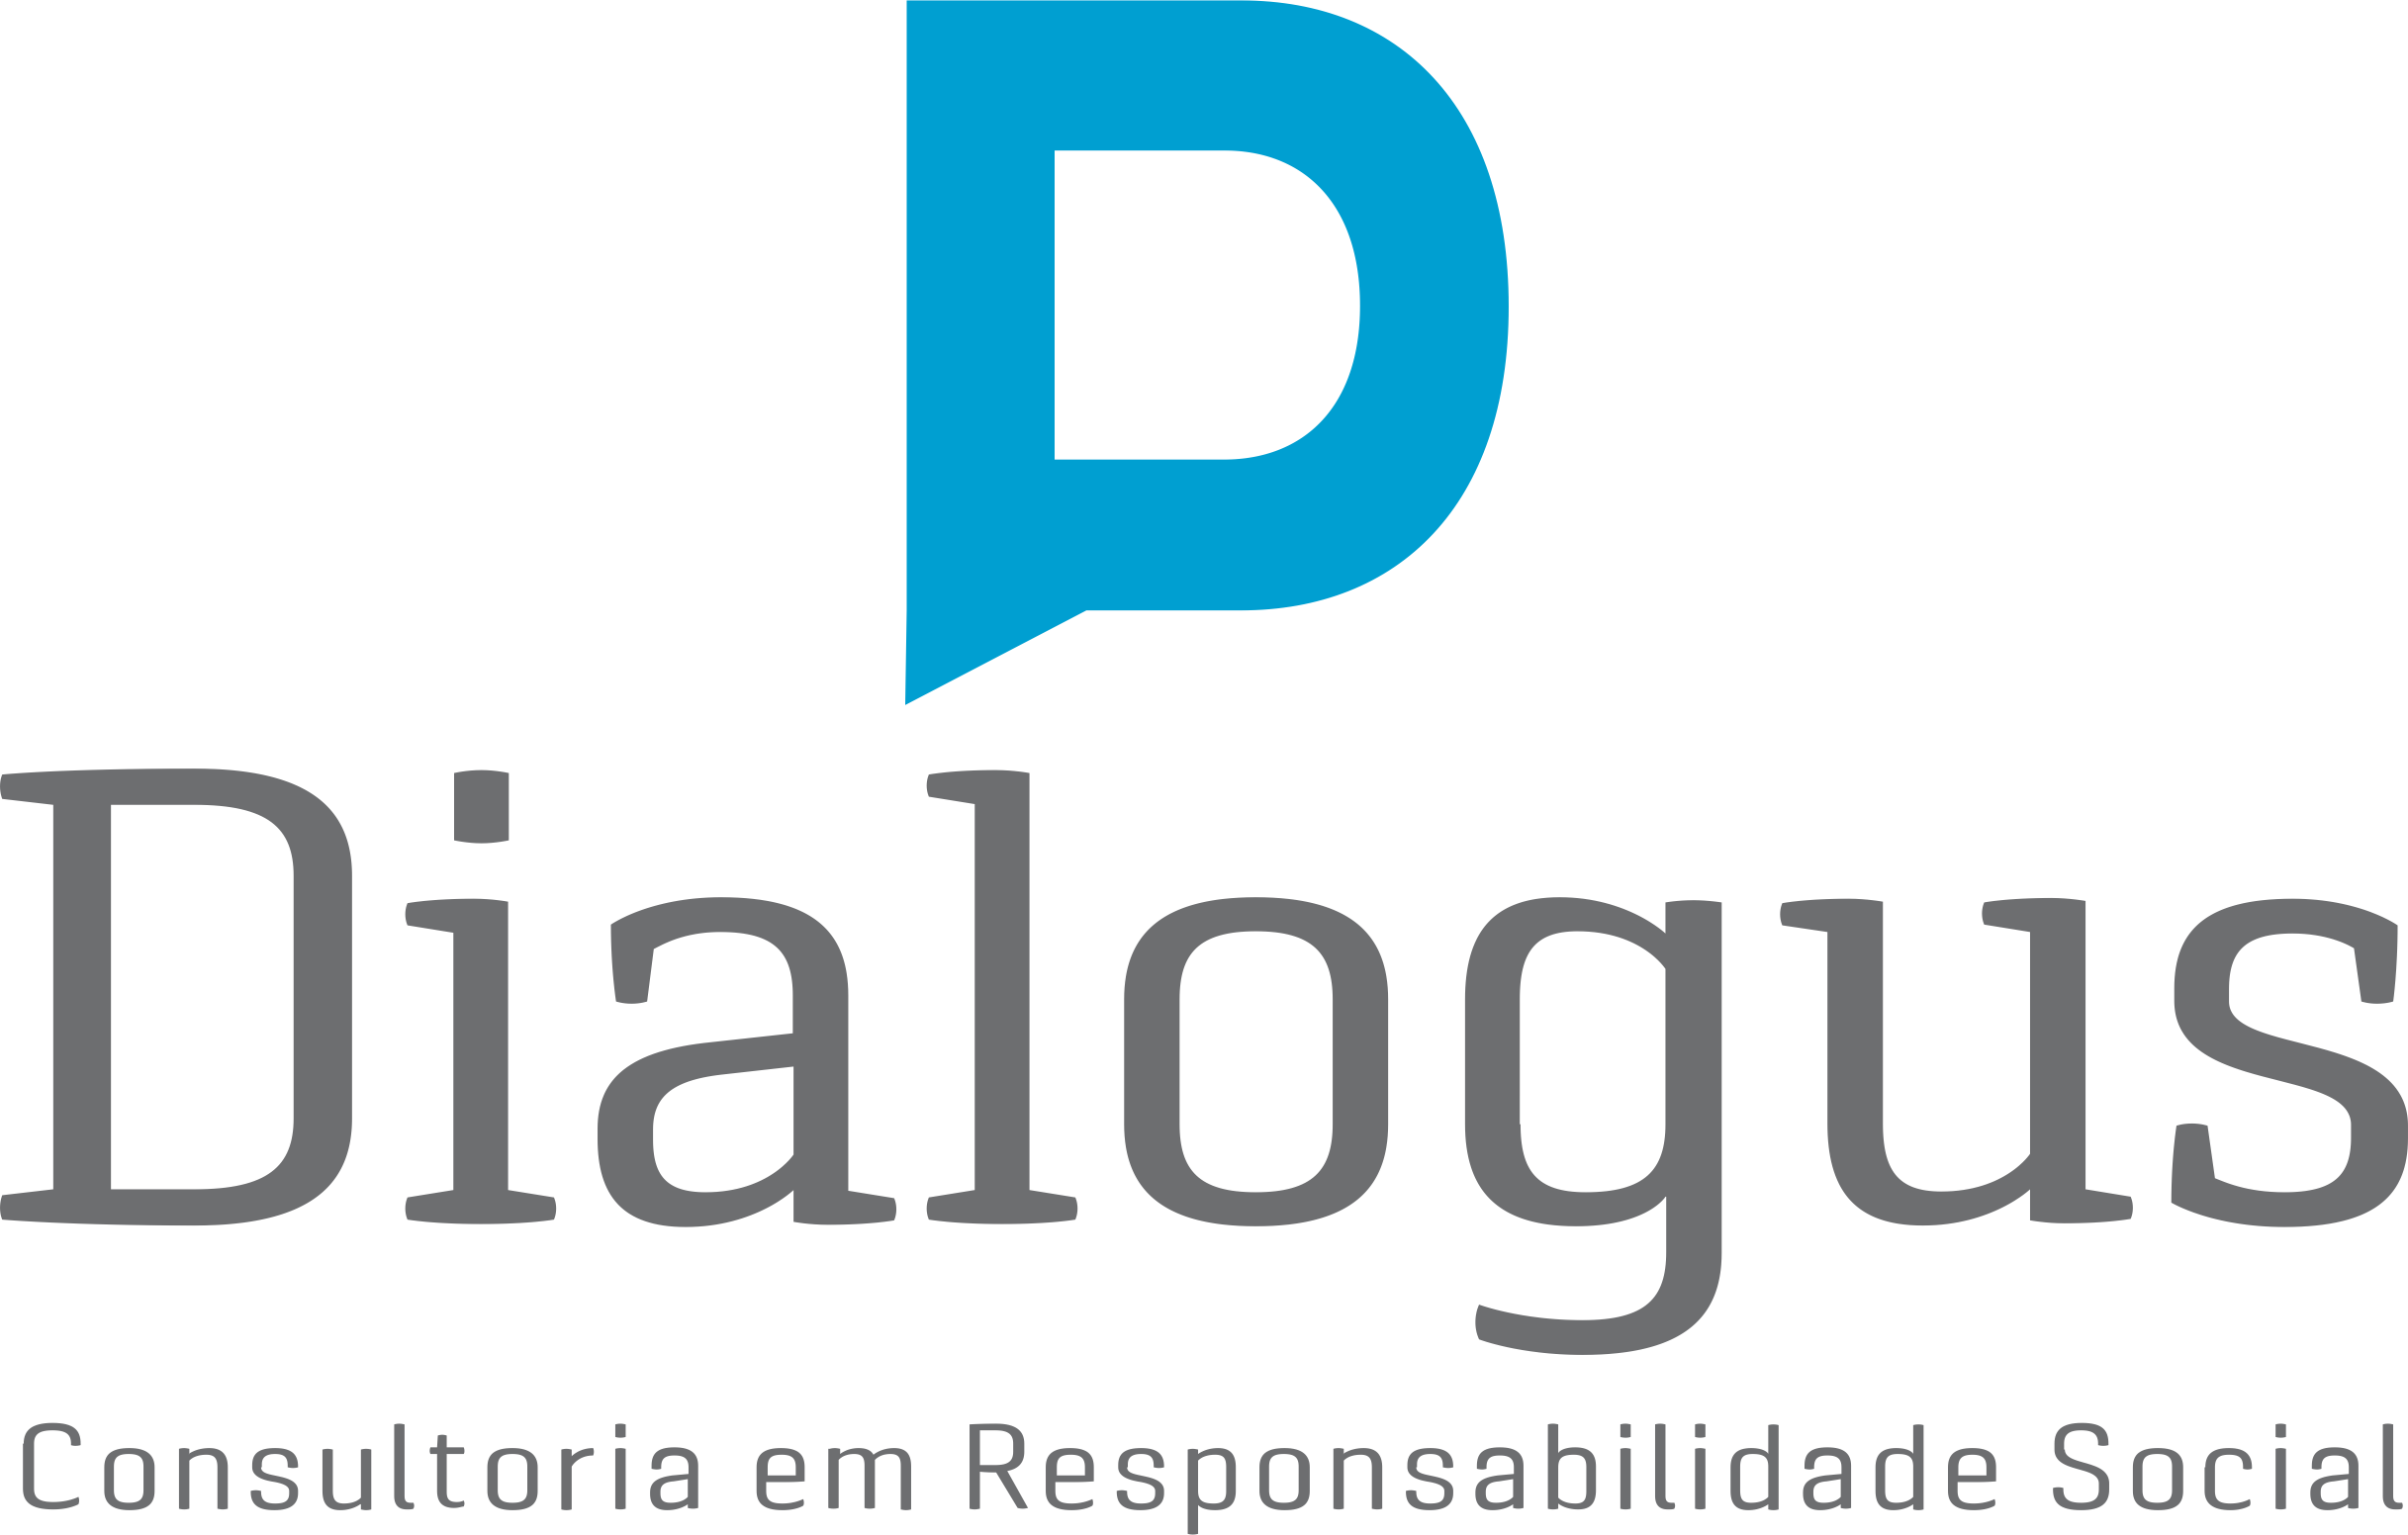 Dialogus Responsabilidade Social - Consultoria - Escola Sustentável - Fortaleza/CE